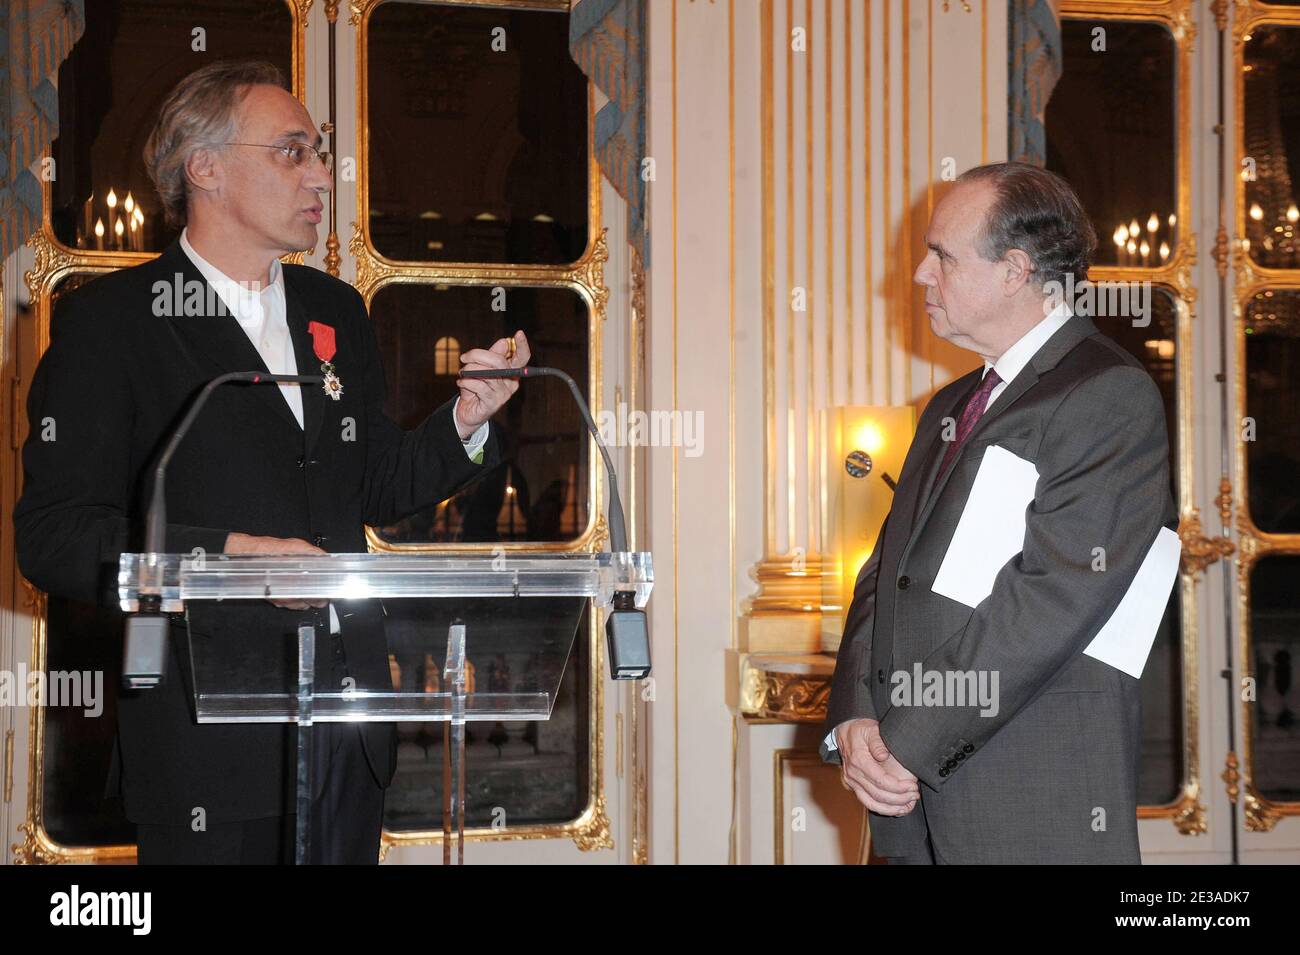 Marc Mimmam, riceve la medaglia Chevalier dans l'Ordre De la Legion d'Honneur durante una cerimonia al ministro della cultura a Parigi, Francia, il 22 novembre 2010. Foto di Giancarlo Gorassini/ABACAPRESS.COM Foto Stock